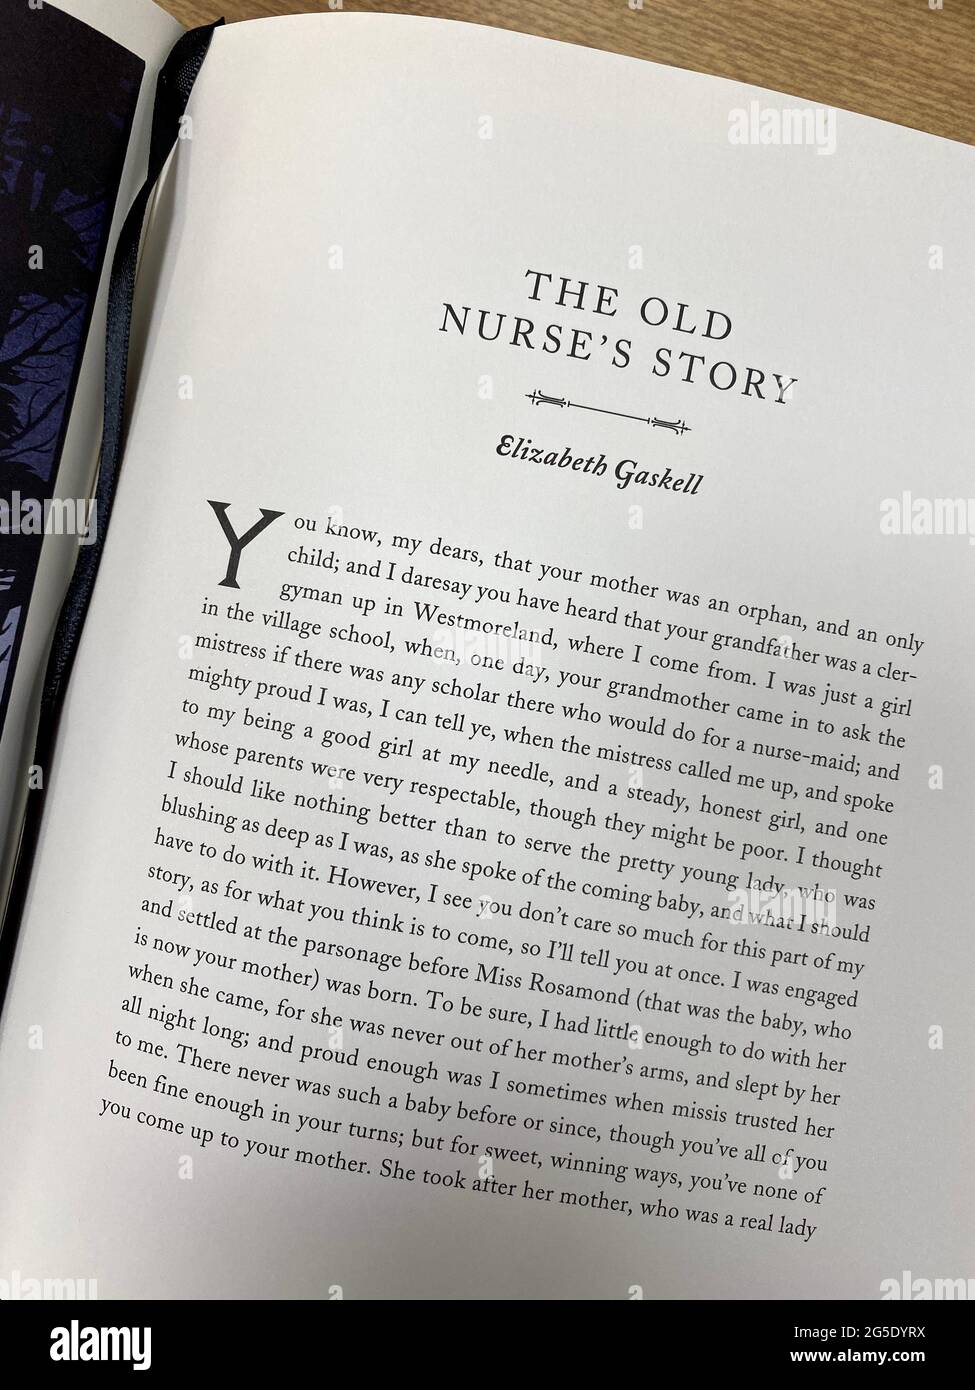 Texte d'ouverture de l'histoire de l'ancienne infirmière par Elizabeth Gaskell dans un livre avec une collection d'histoires fantômes Banque D'Images